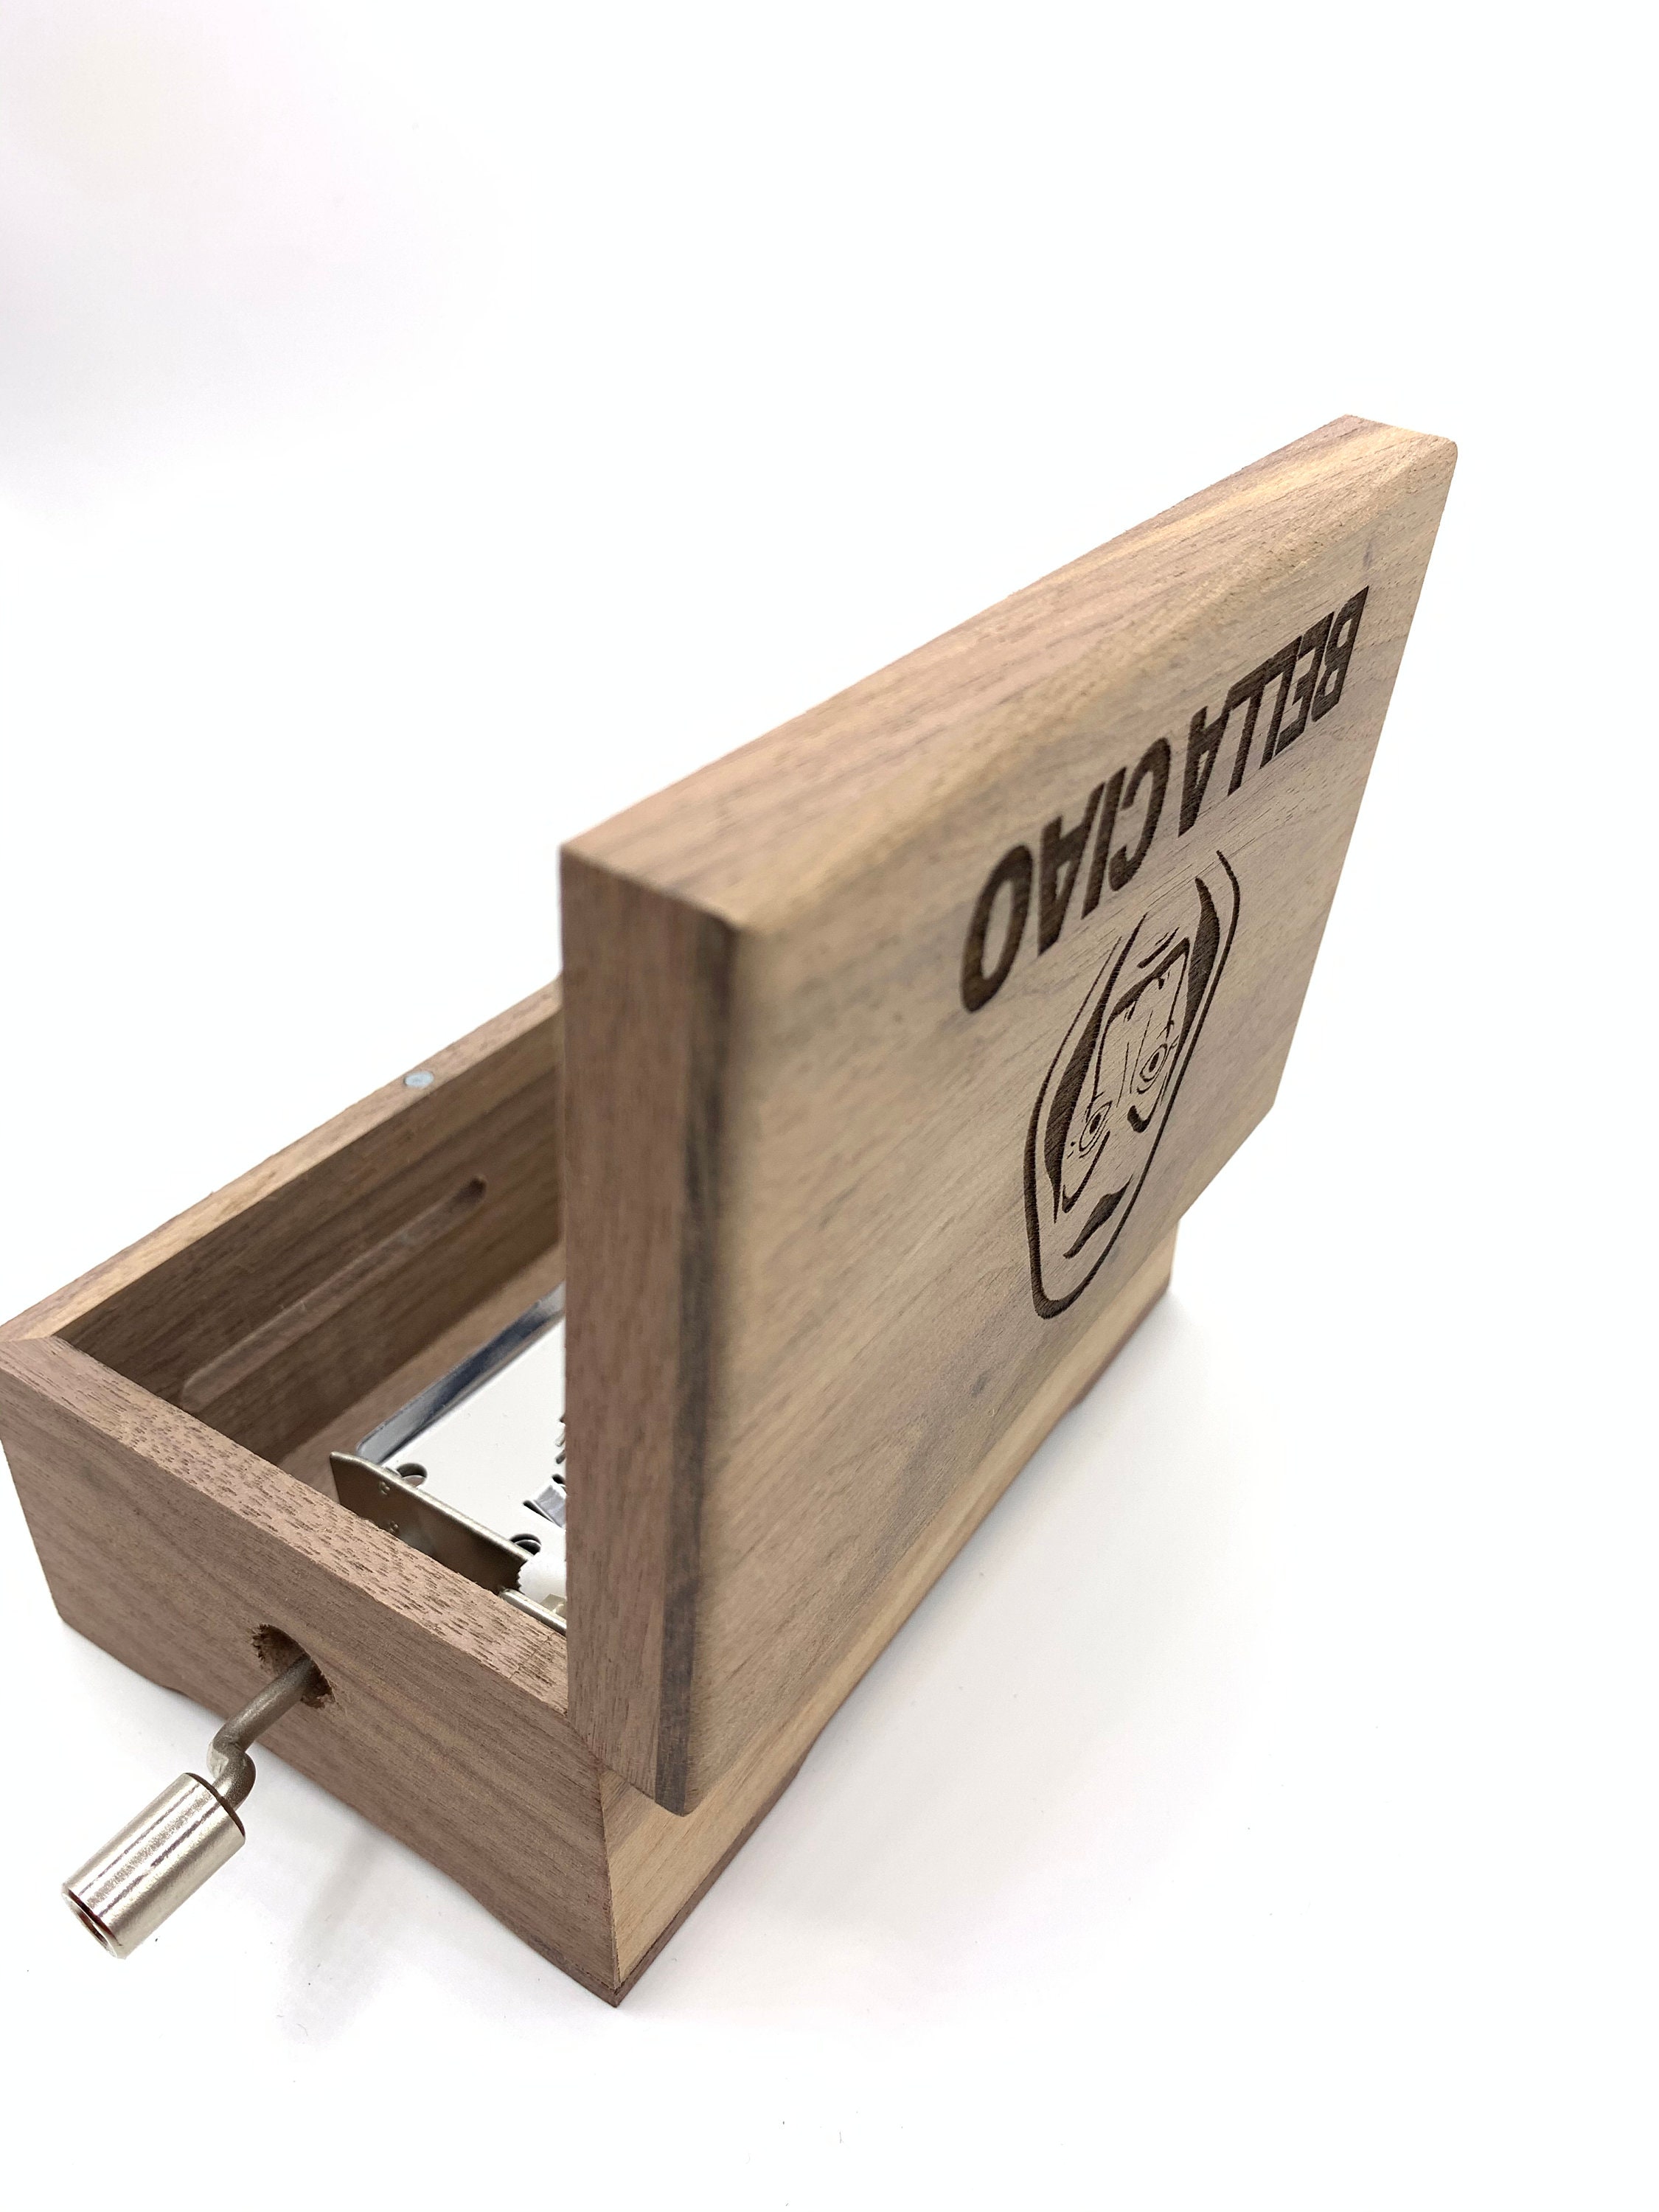 Caja de música personalizada: carga tus propias canciones con USB, espacio  de 15 canciones, caja musical exterior con acabado de madera mate con